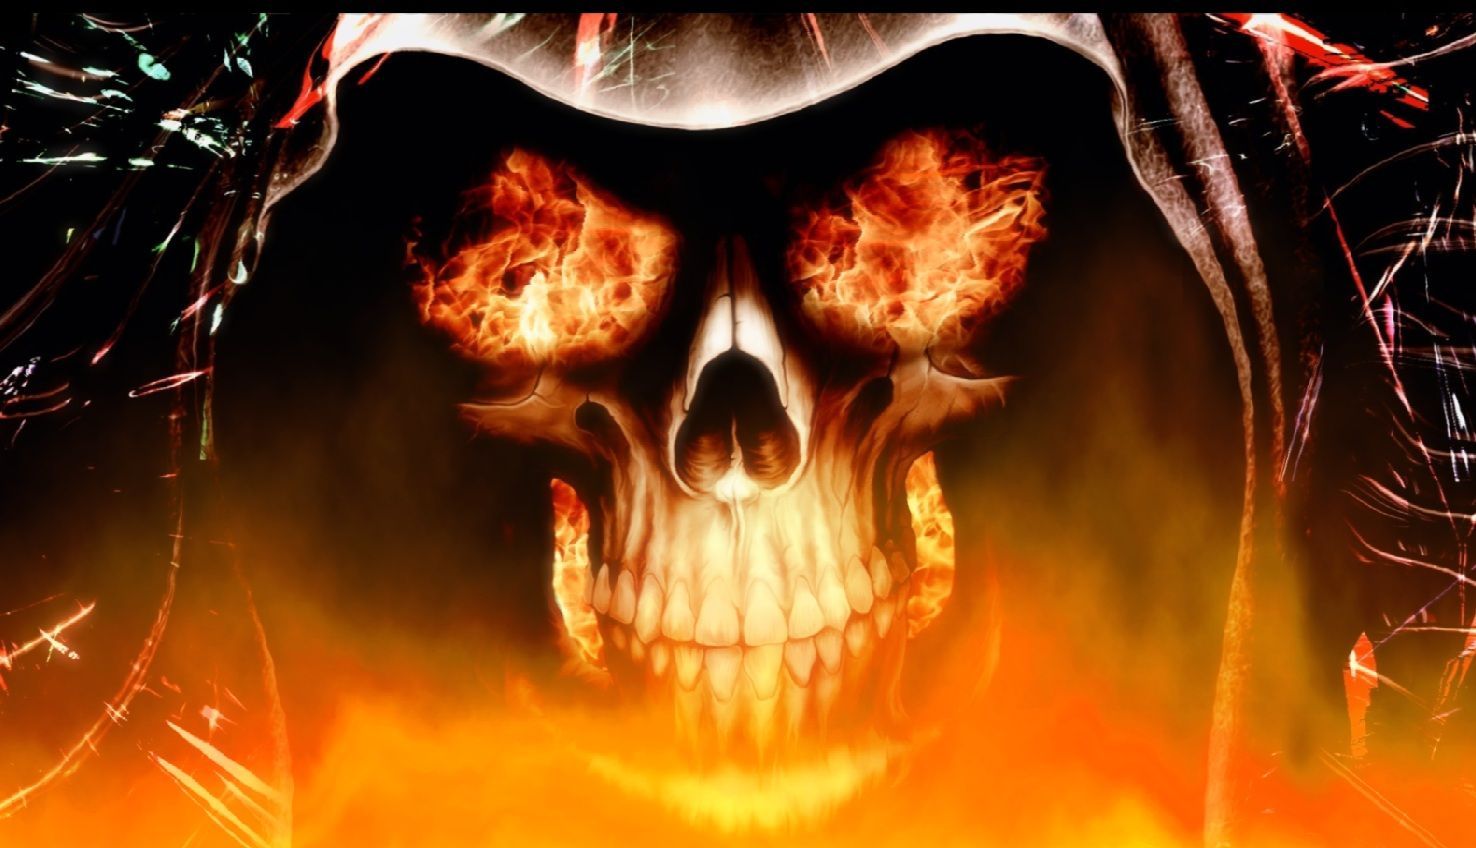 Download Fire Skull Animated Wallpaper DesktopAnimated.com